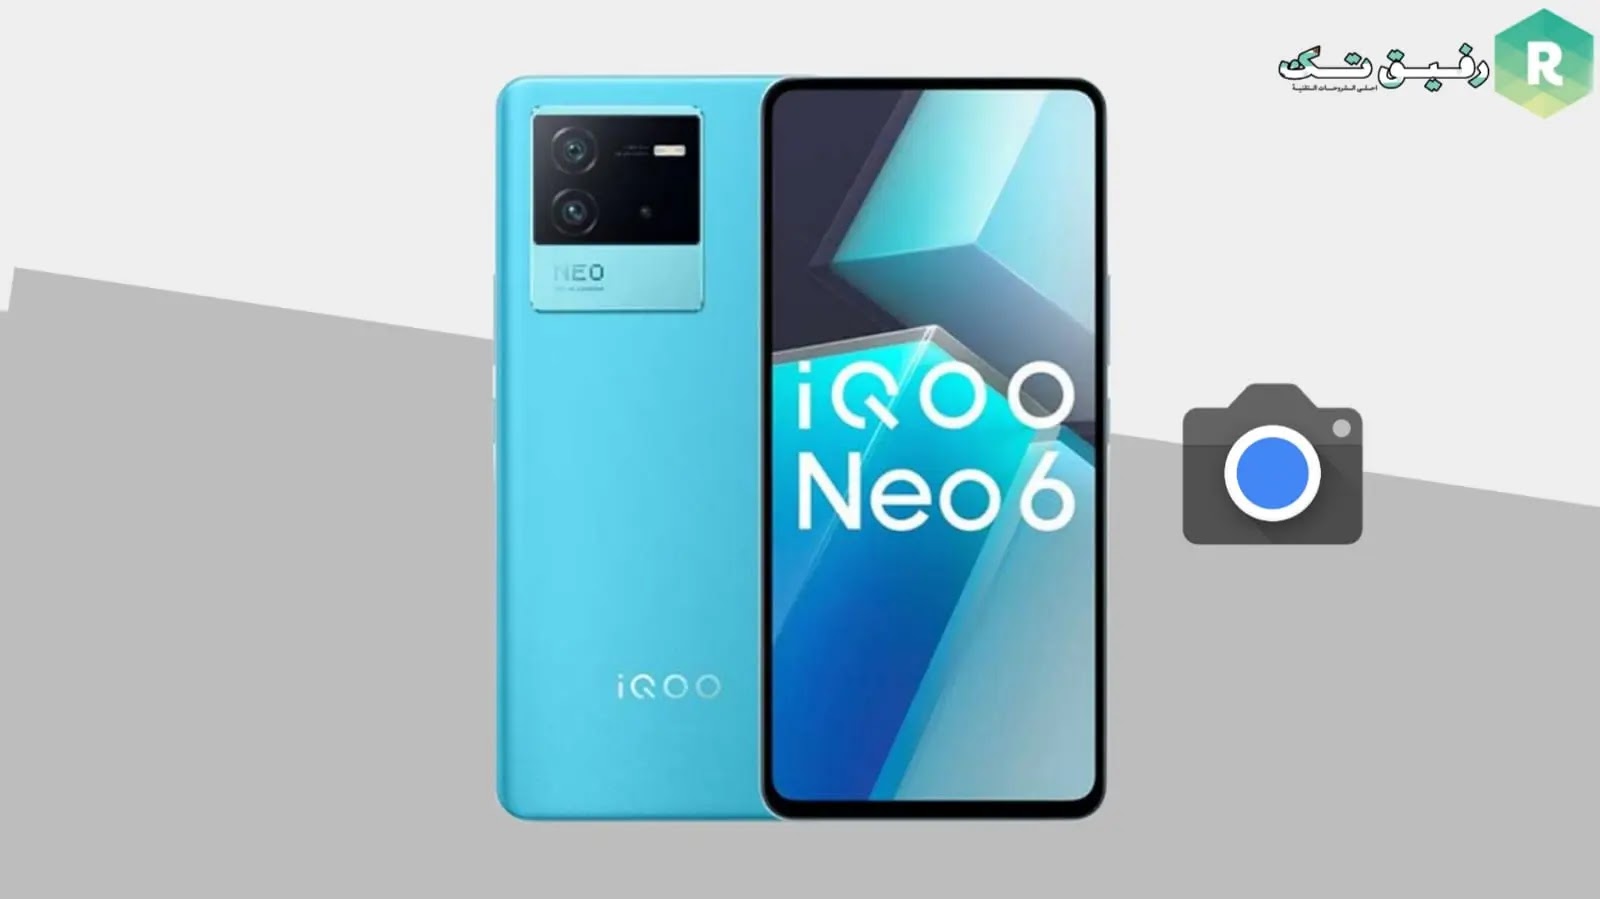 Gcam 8.4 for IQOO Neo 6